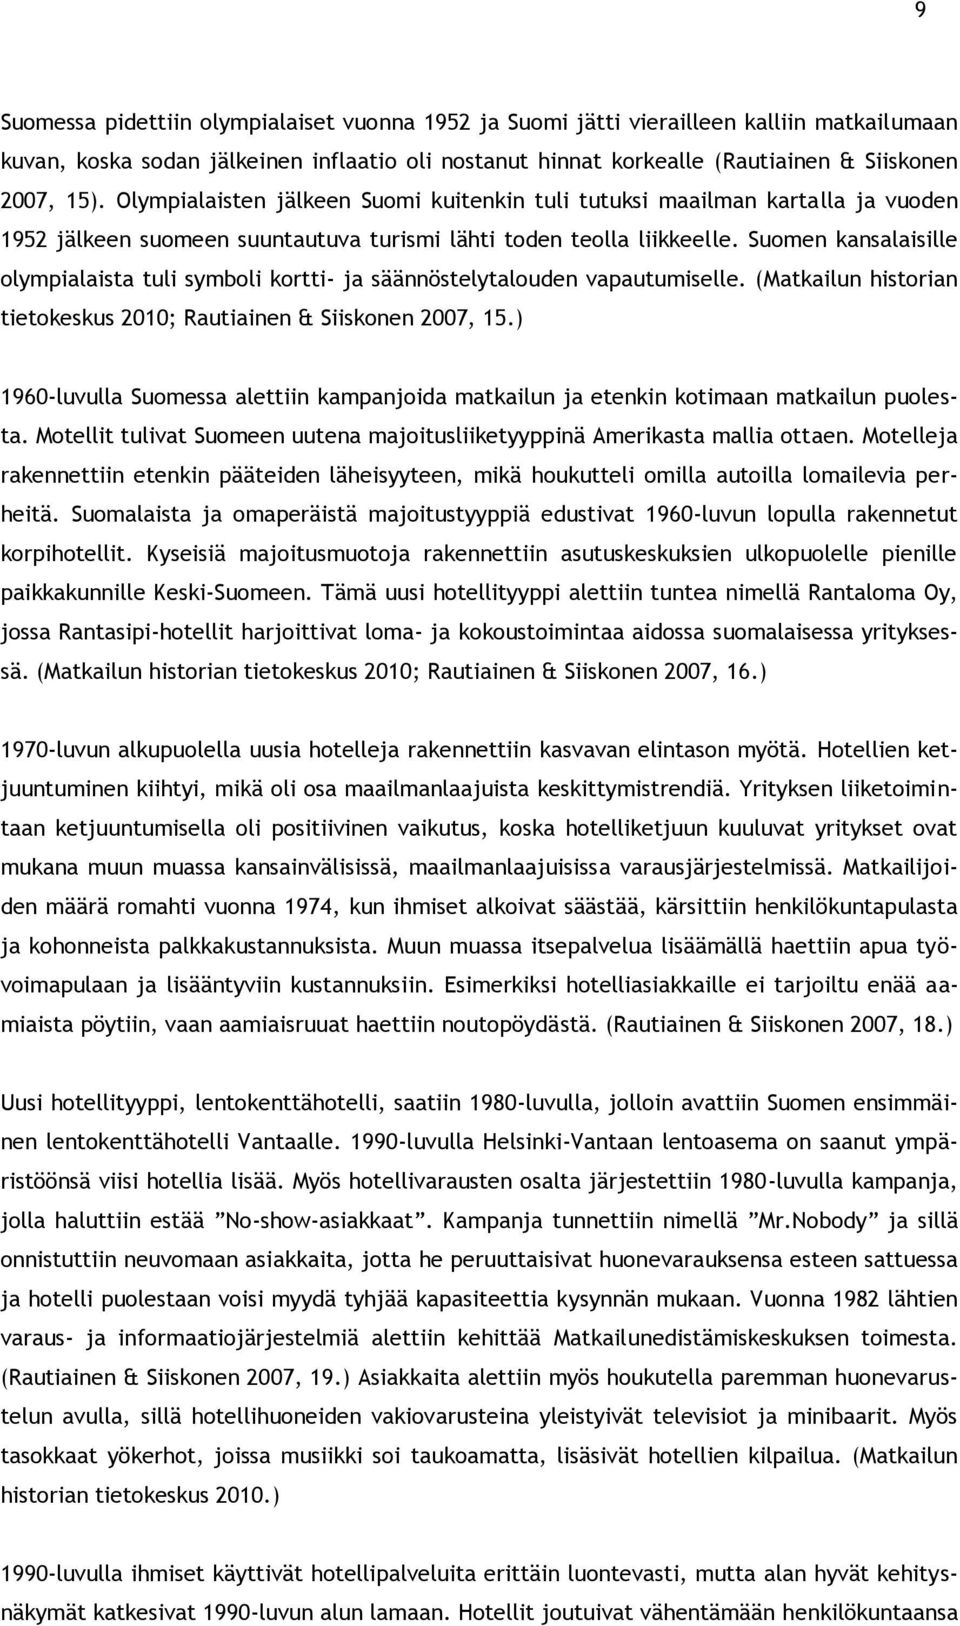 Suomen kansalaisille olympialaista tuli symboli kortti- ja säännöstelytalouden vapautumiselle. (Matkailun historian tietokeskus 2010; Rautiainen & Siiskonen 2007, 15.